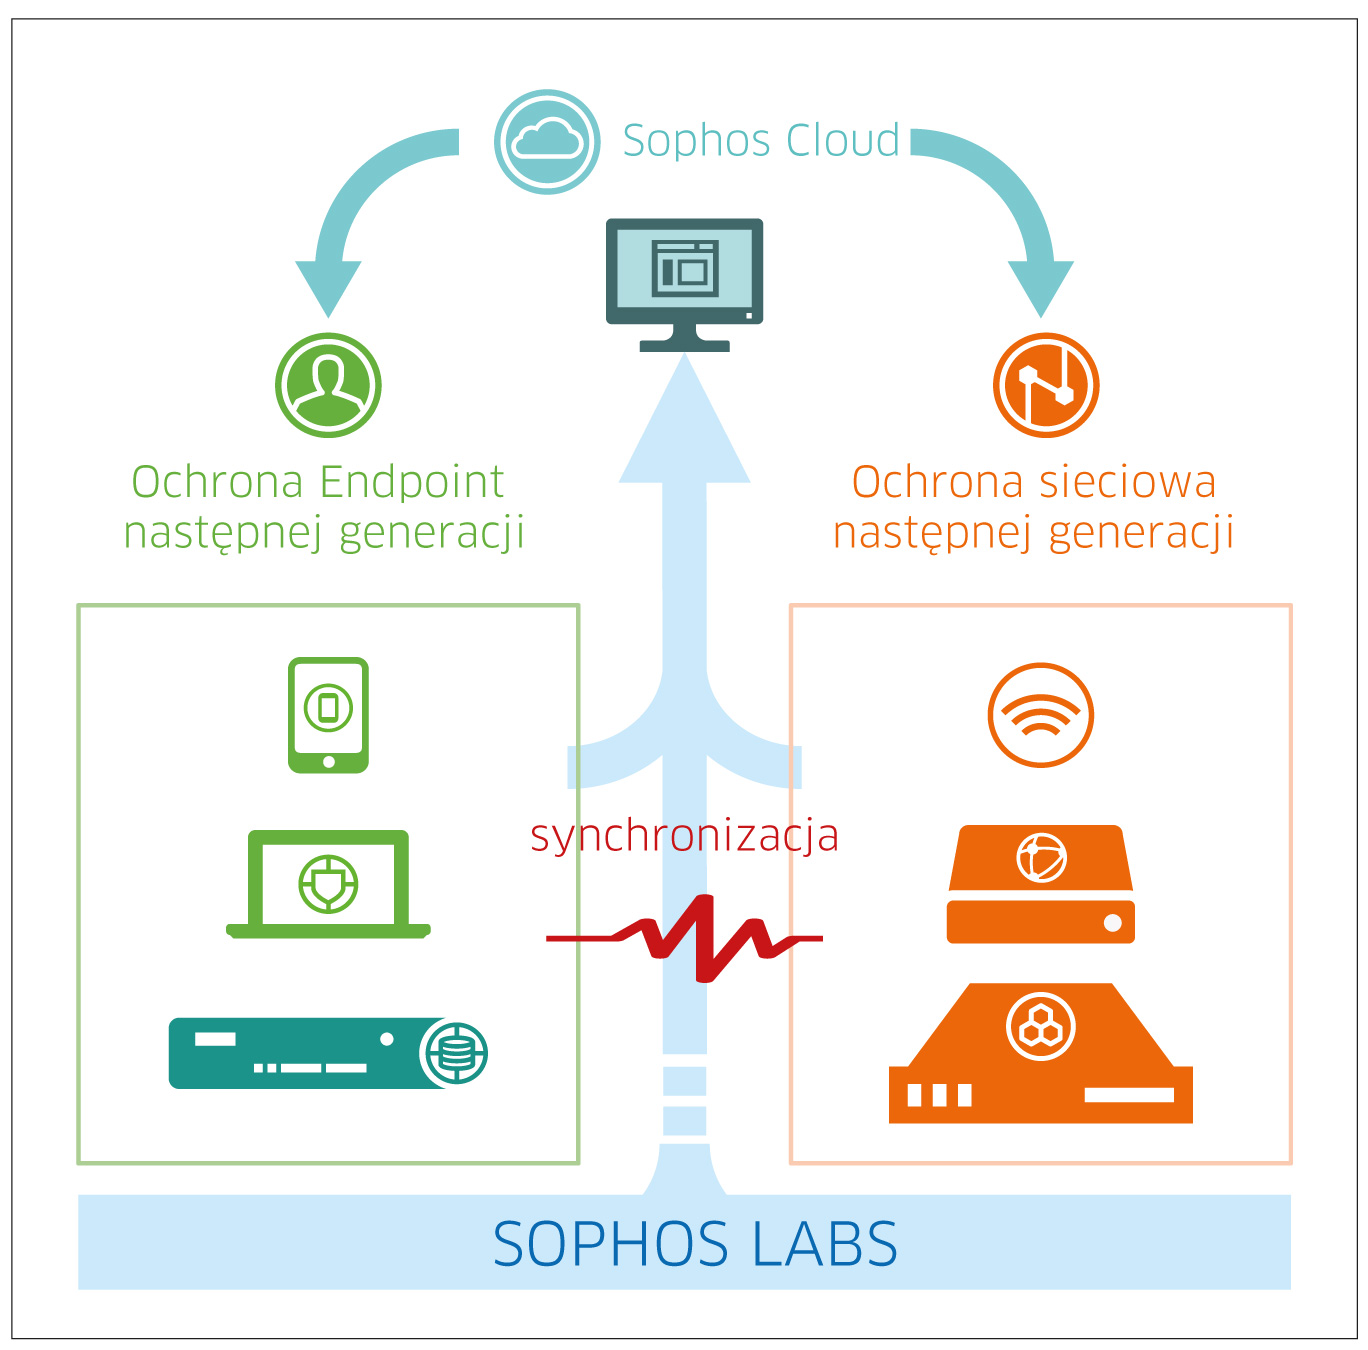 Sophos Galileo zabezpiecza sieci, serwery i urządzenia pracowników